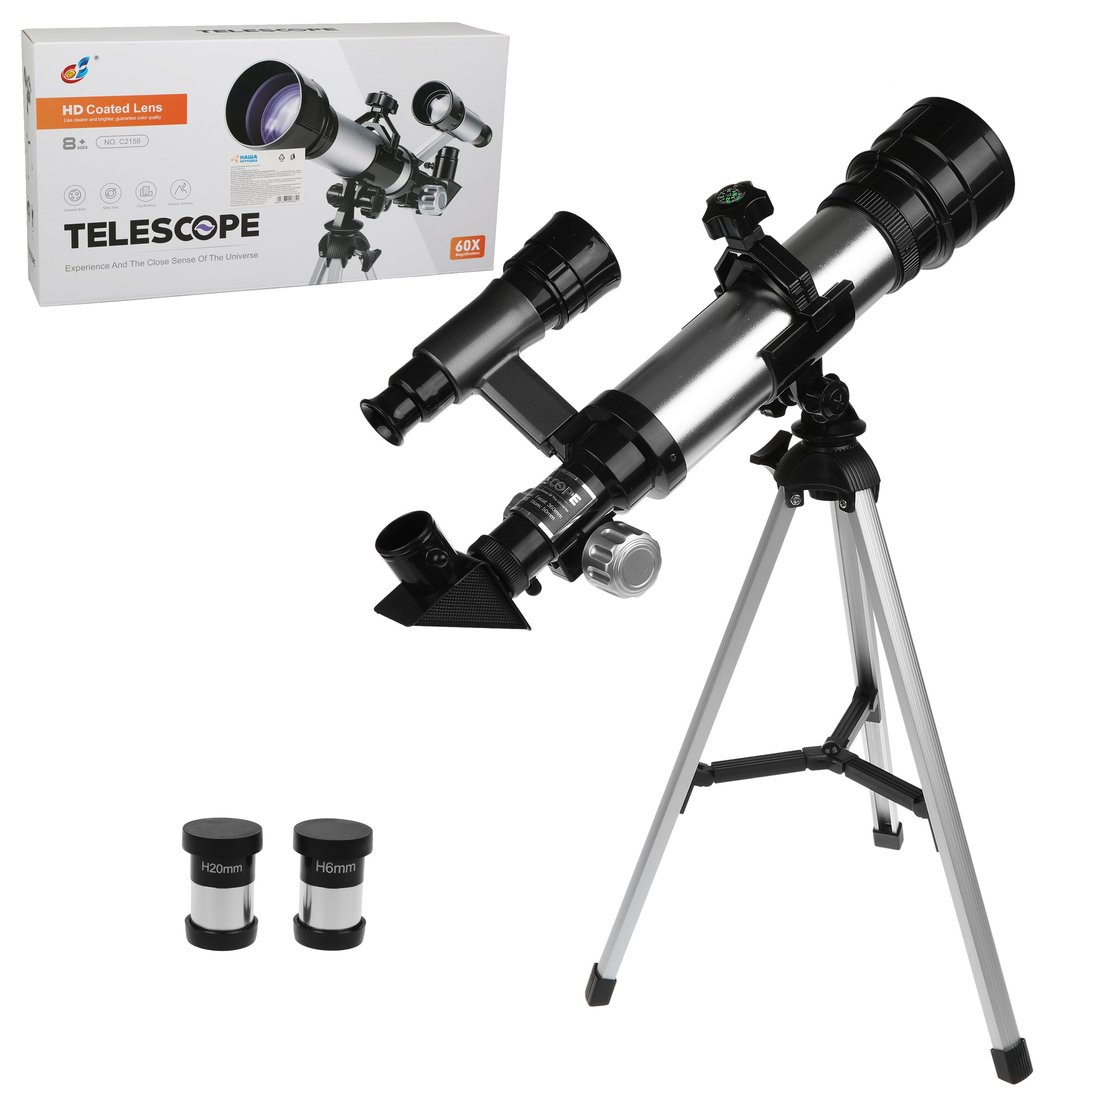 Телескоп детский Наша Игрушка 60х увеличение, 3 объектива арт. 800664